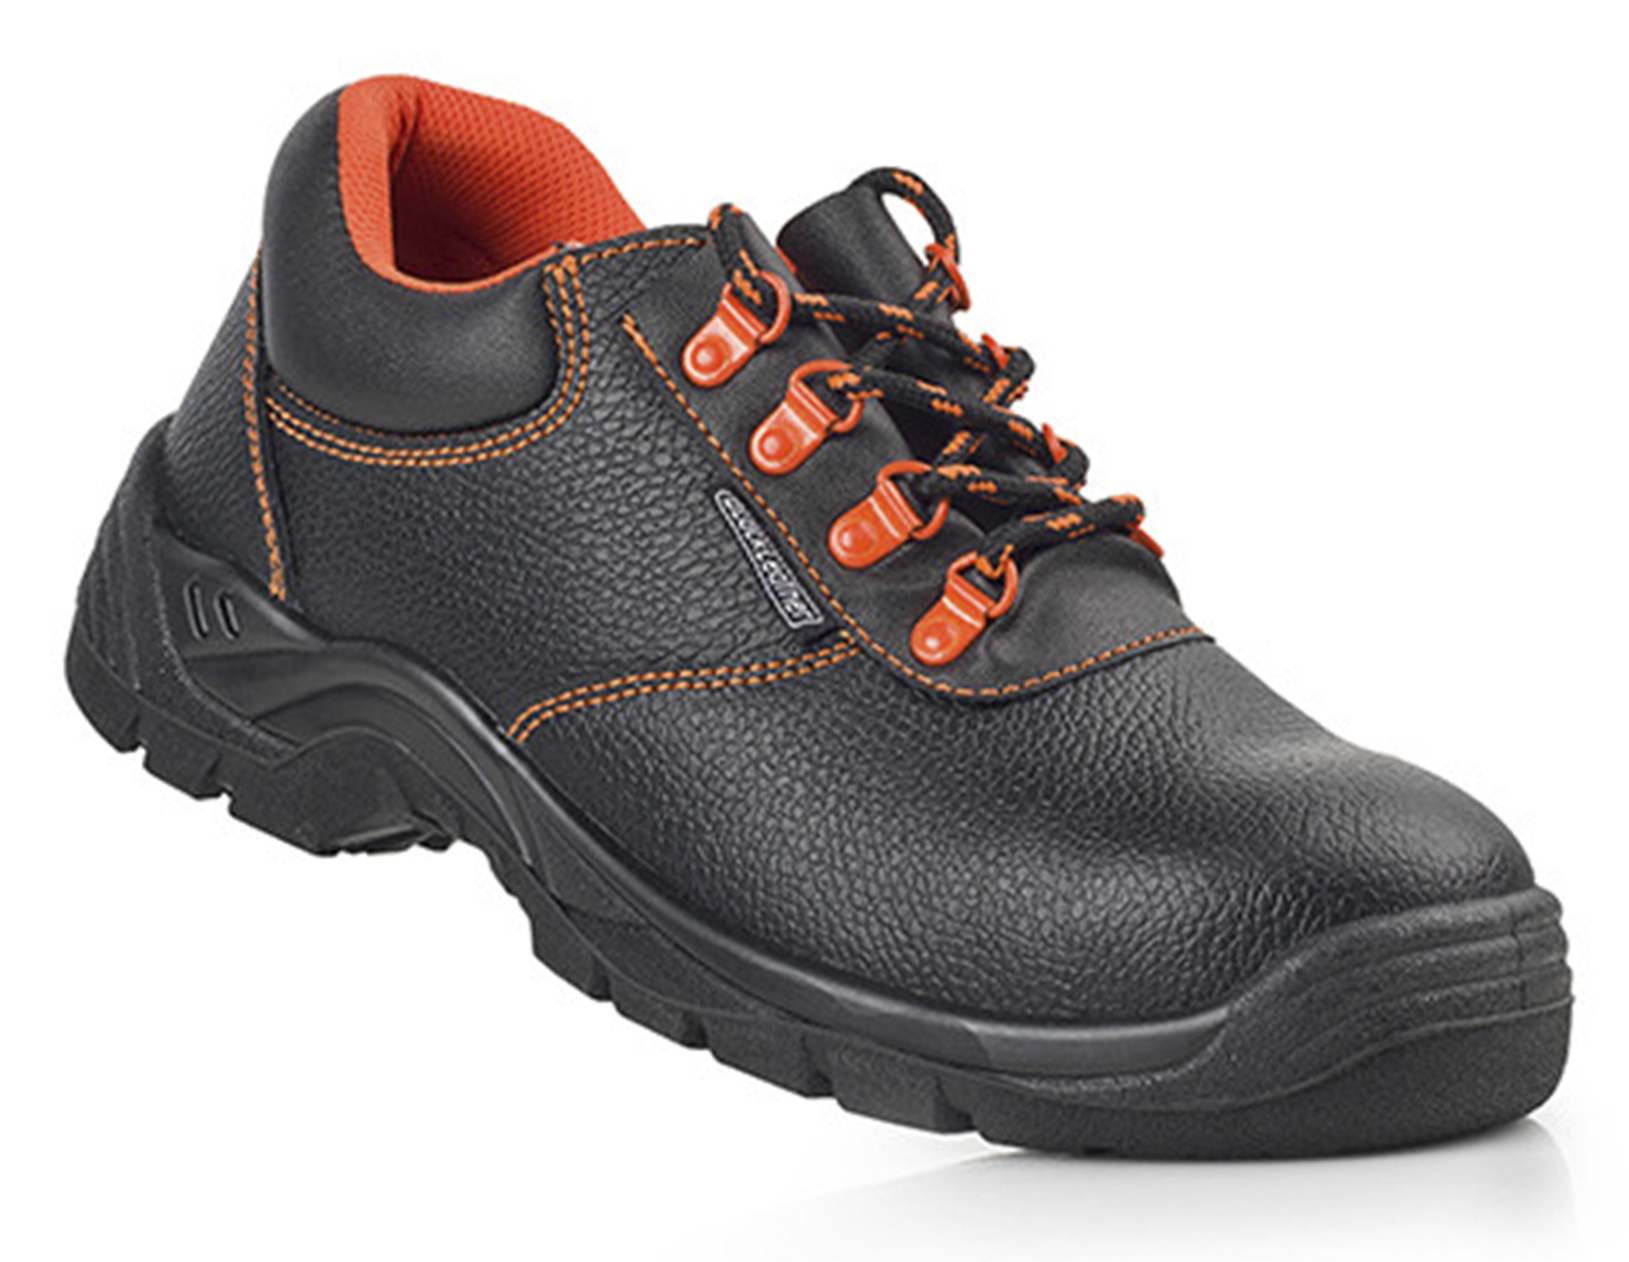 ZECO1 Calçado de Segurança BlackLeather Sapato mod. ZECO1 (S3 SRC E A).